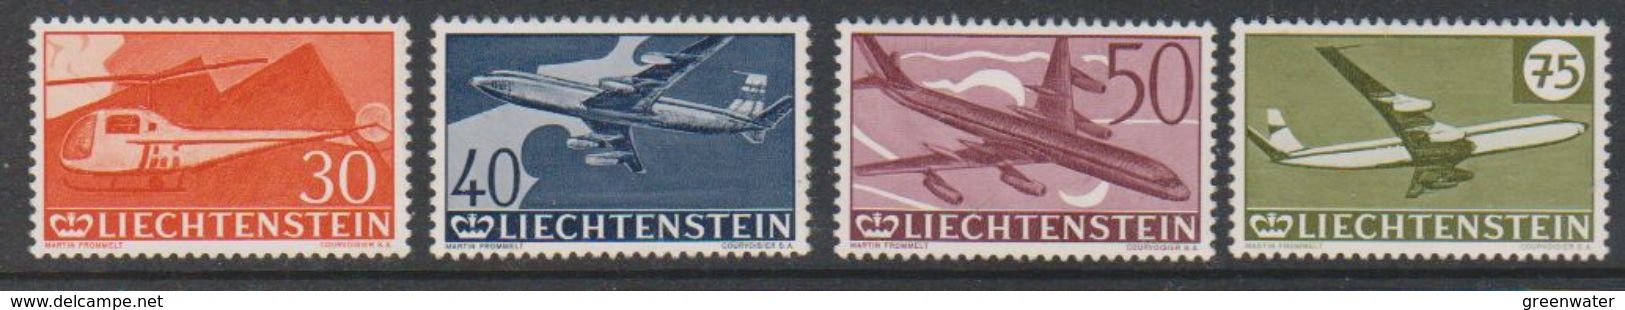 Liechtenstein 1960 Airmail Stamps 4v Mint (regummed) (39550) - Aéreo